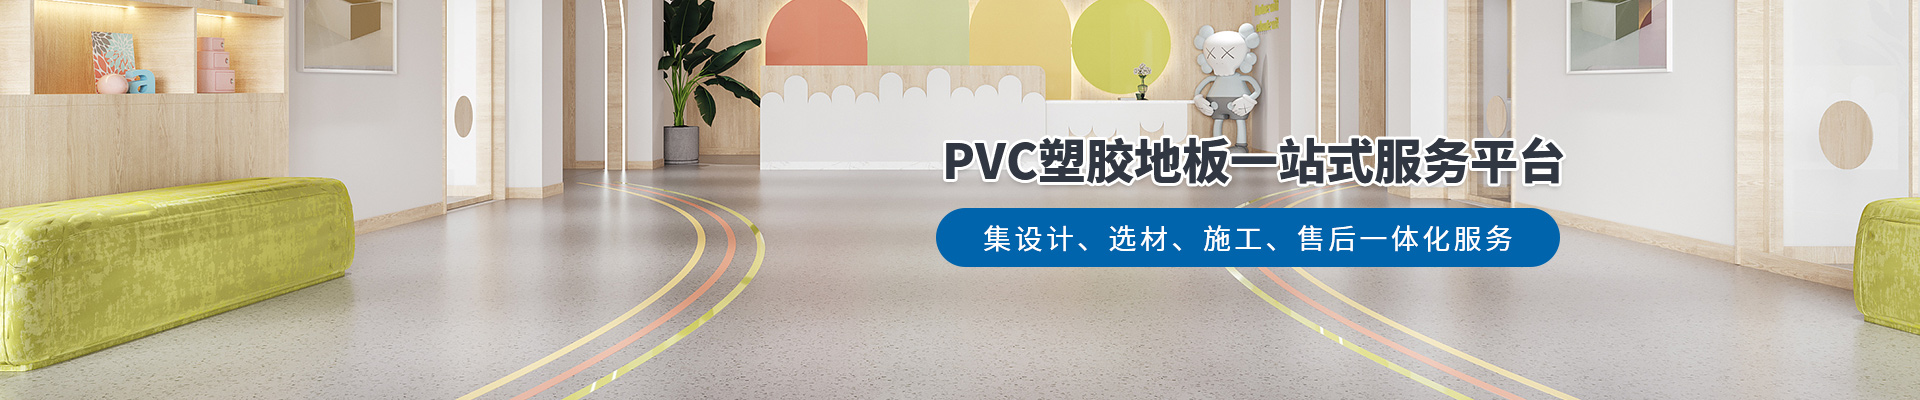 鳳城橡塑，PVC塑膠地板一站式服務平臺